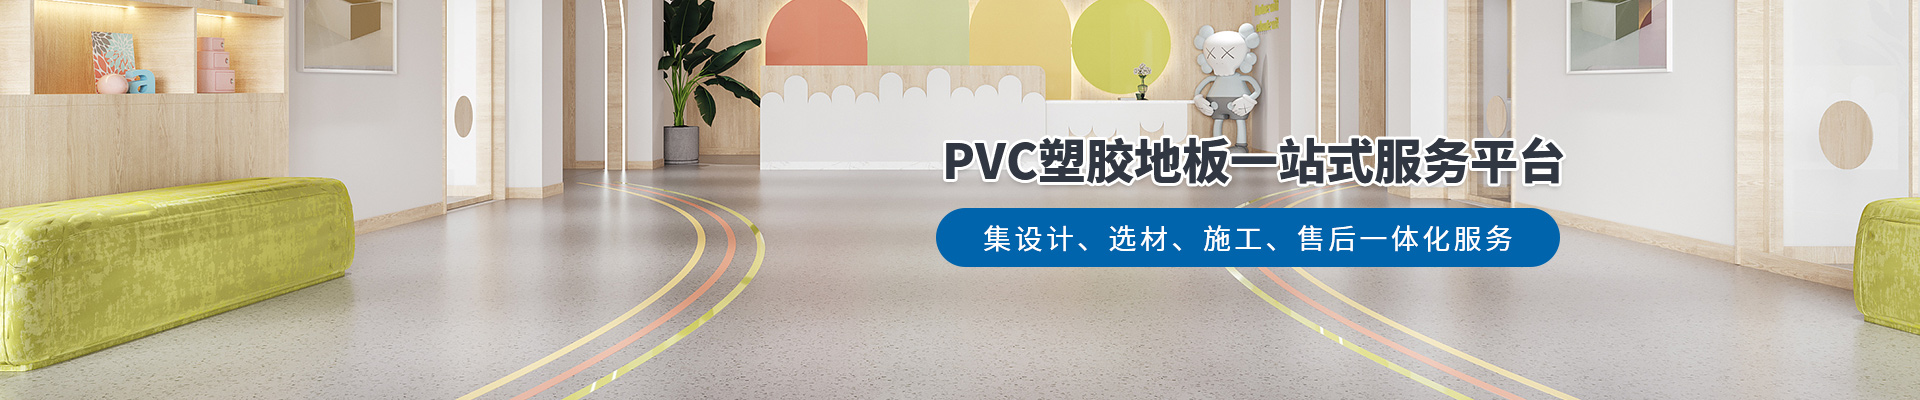 鳳城橡塑，PVC塑膠地板一站式服務平臺